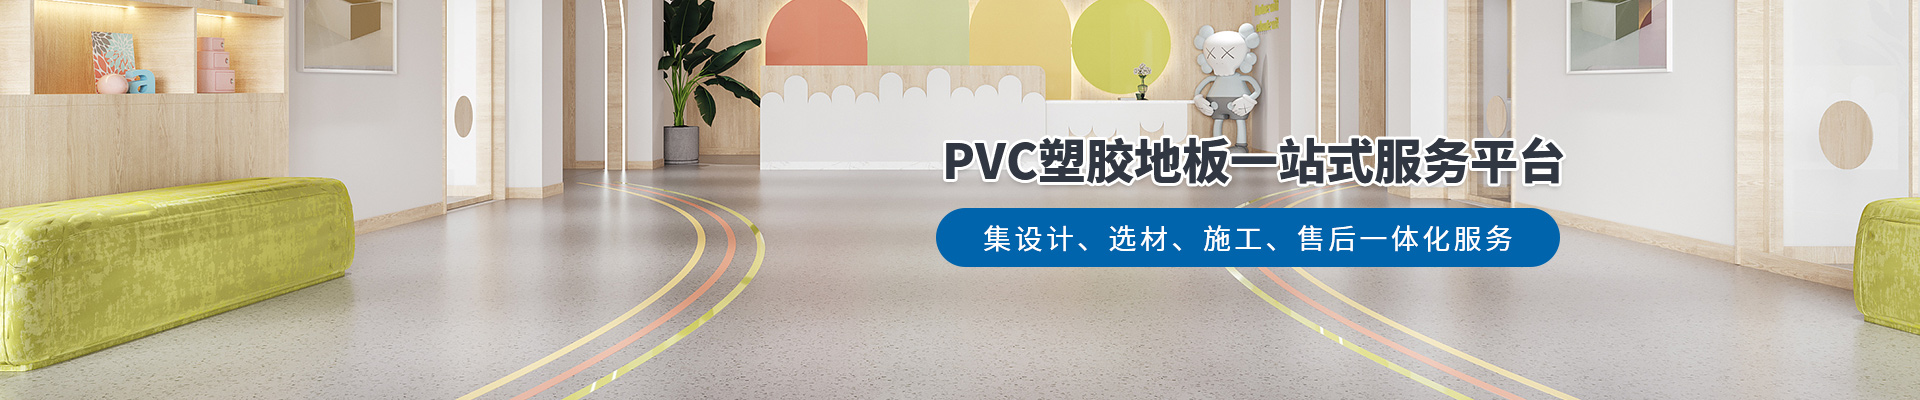 鳳城橡塑，PVC塑膠地板一站式服務平臺